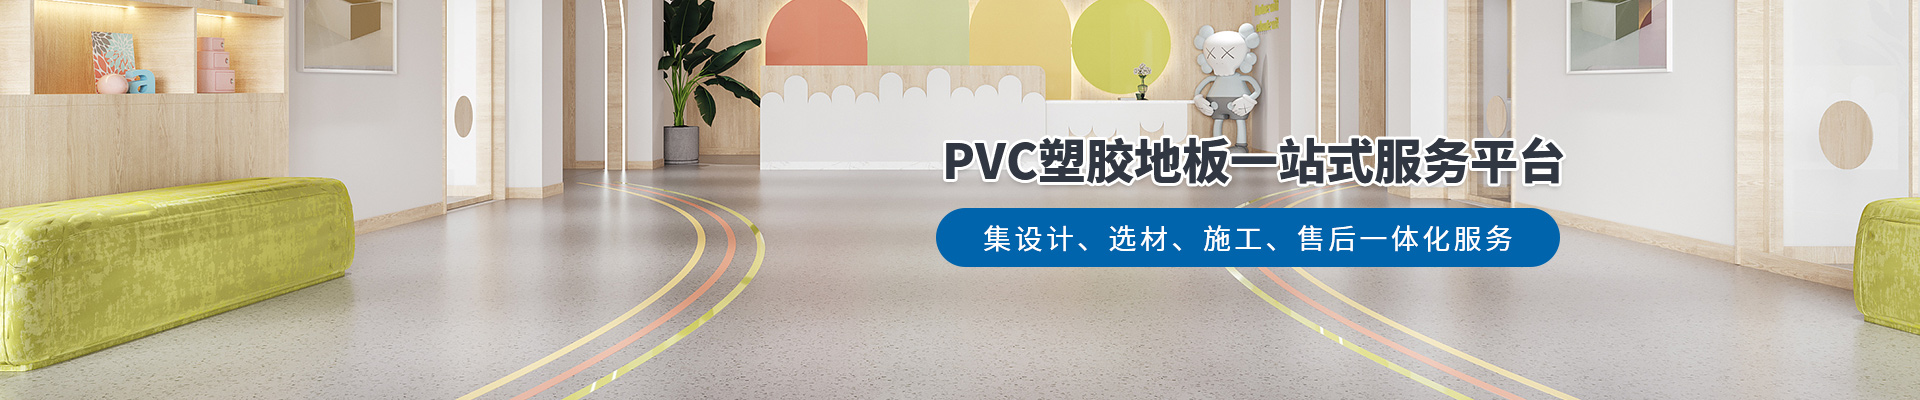 鳳城橡塑，PVC塑膠地板一站式服務平臺